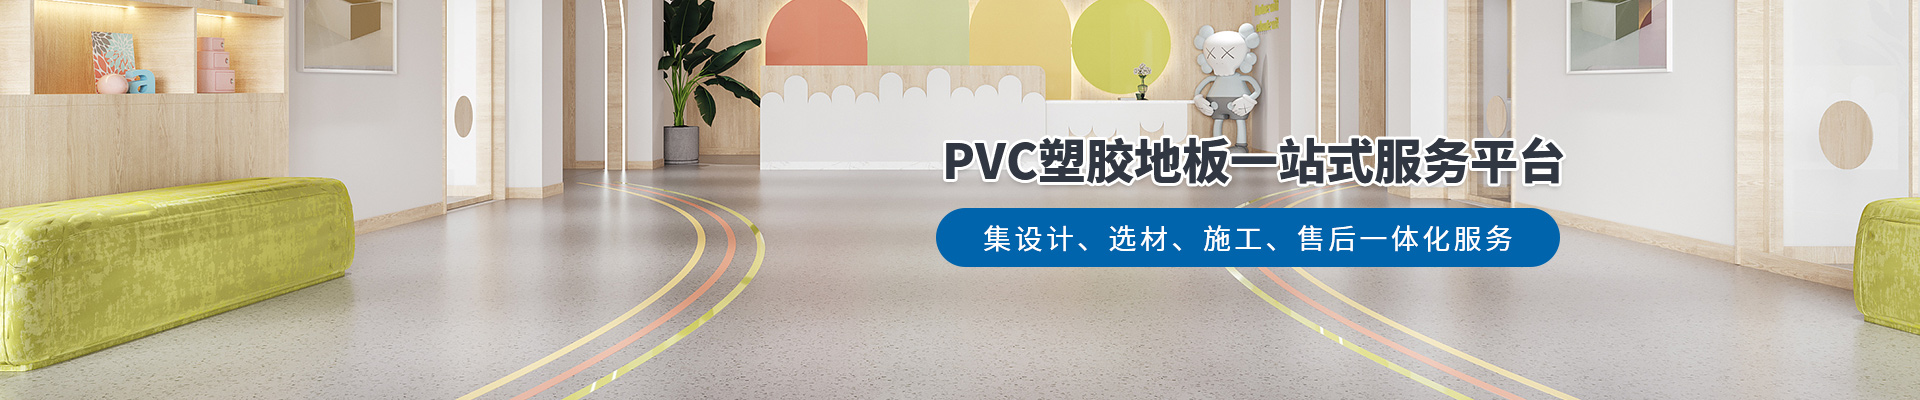 鳳城橡塑，PVC塑膠地板一站式服務平臺